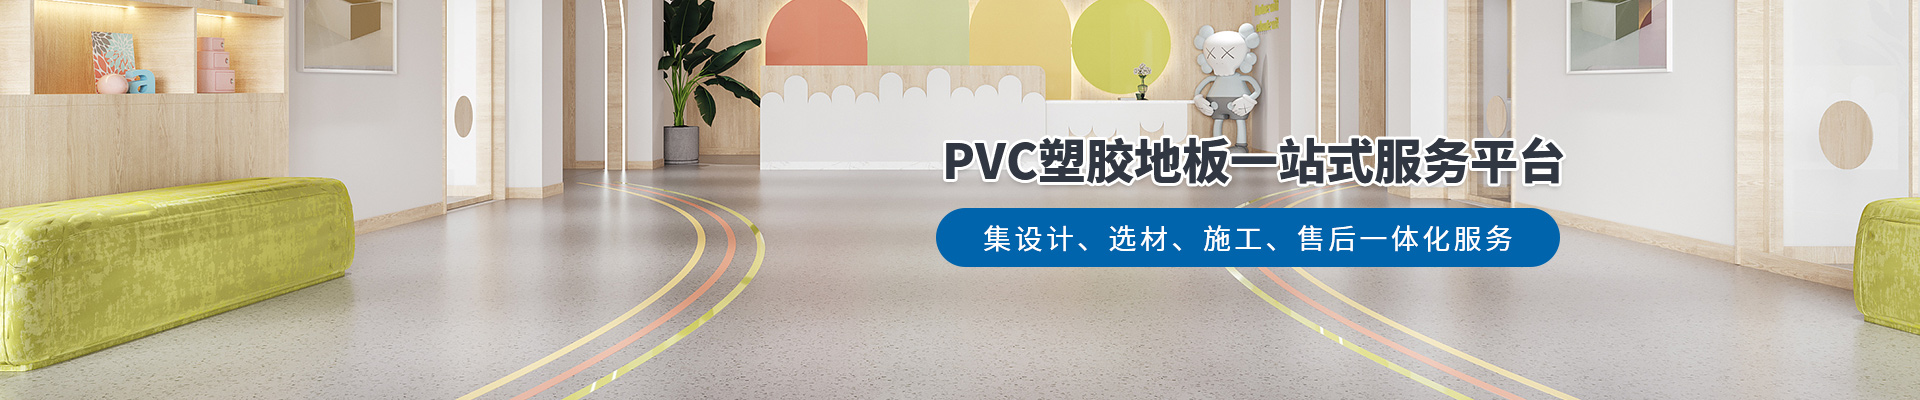 鳳城橡塑，PVC塑膠地板一站式服務平臺